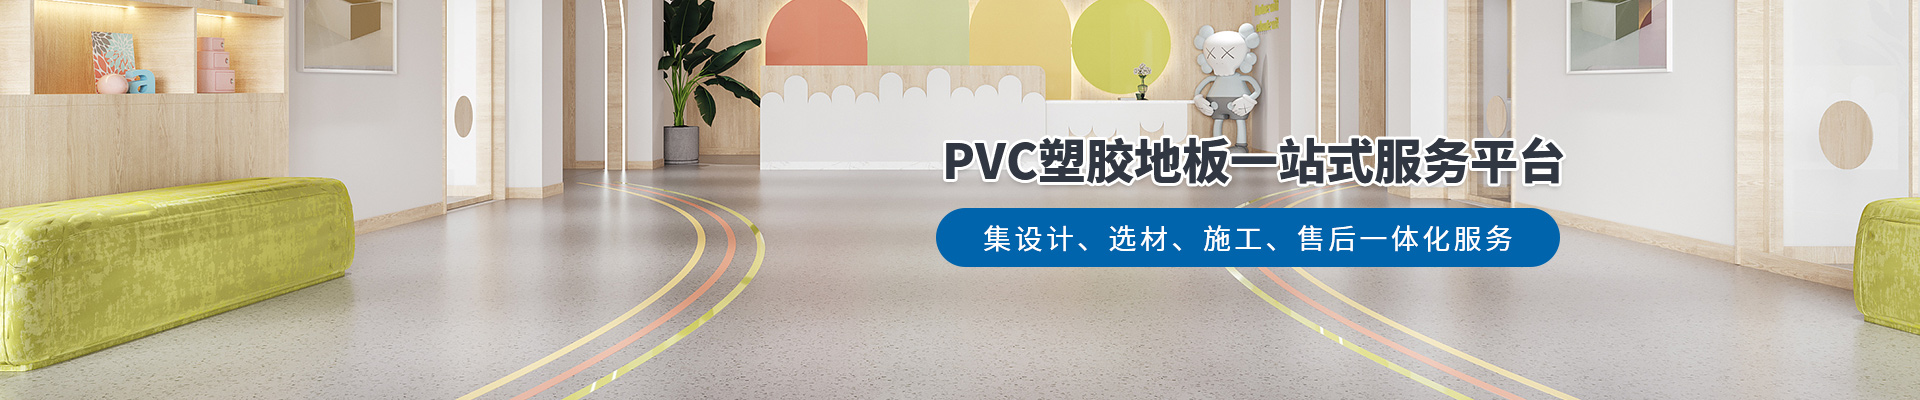 鳳城橡塑，PVC塑膠地板一站式服務平臺